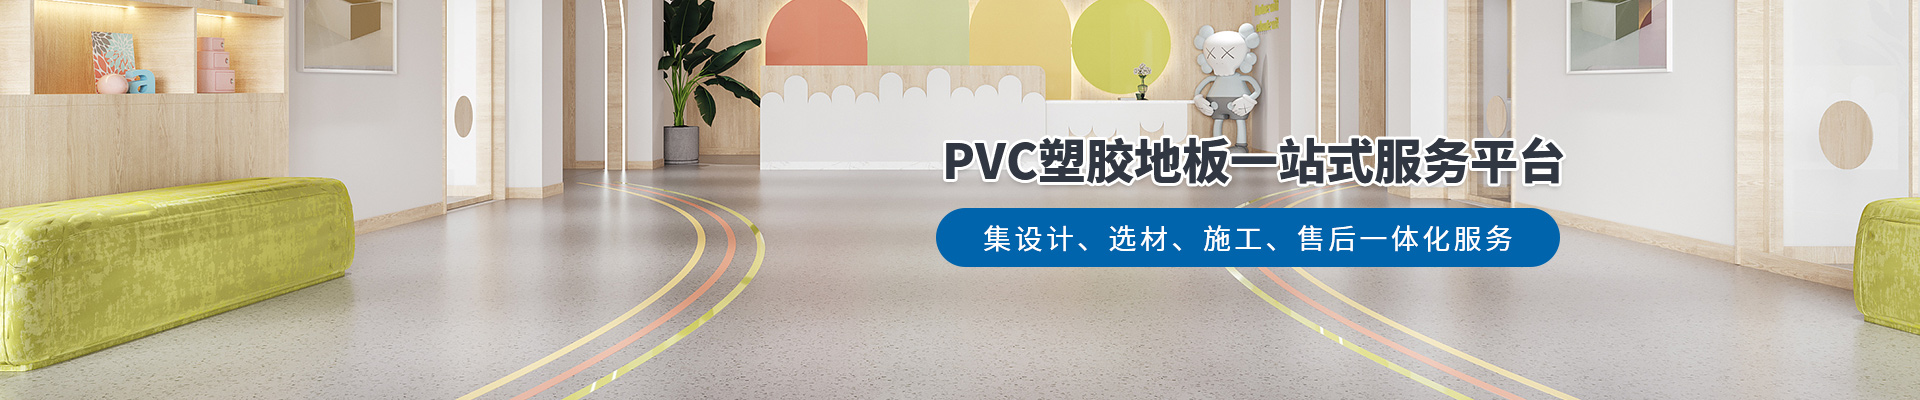 鳳城橡塑，PVC塑膠地板一站式服務平臺